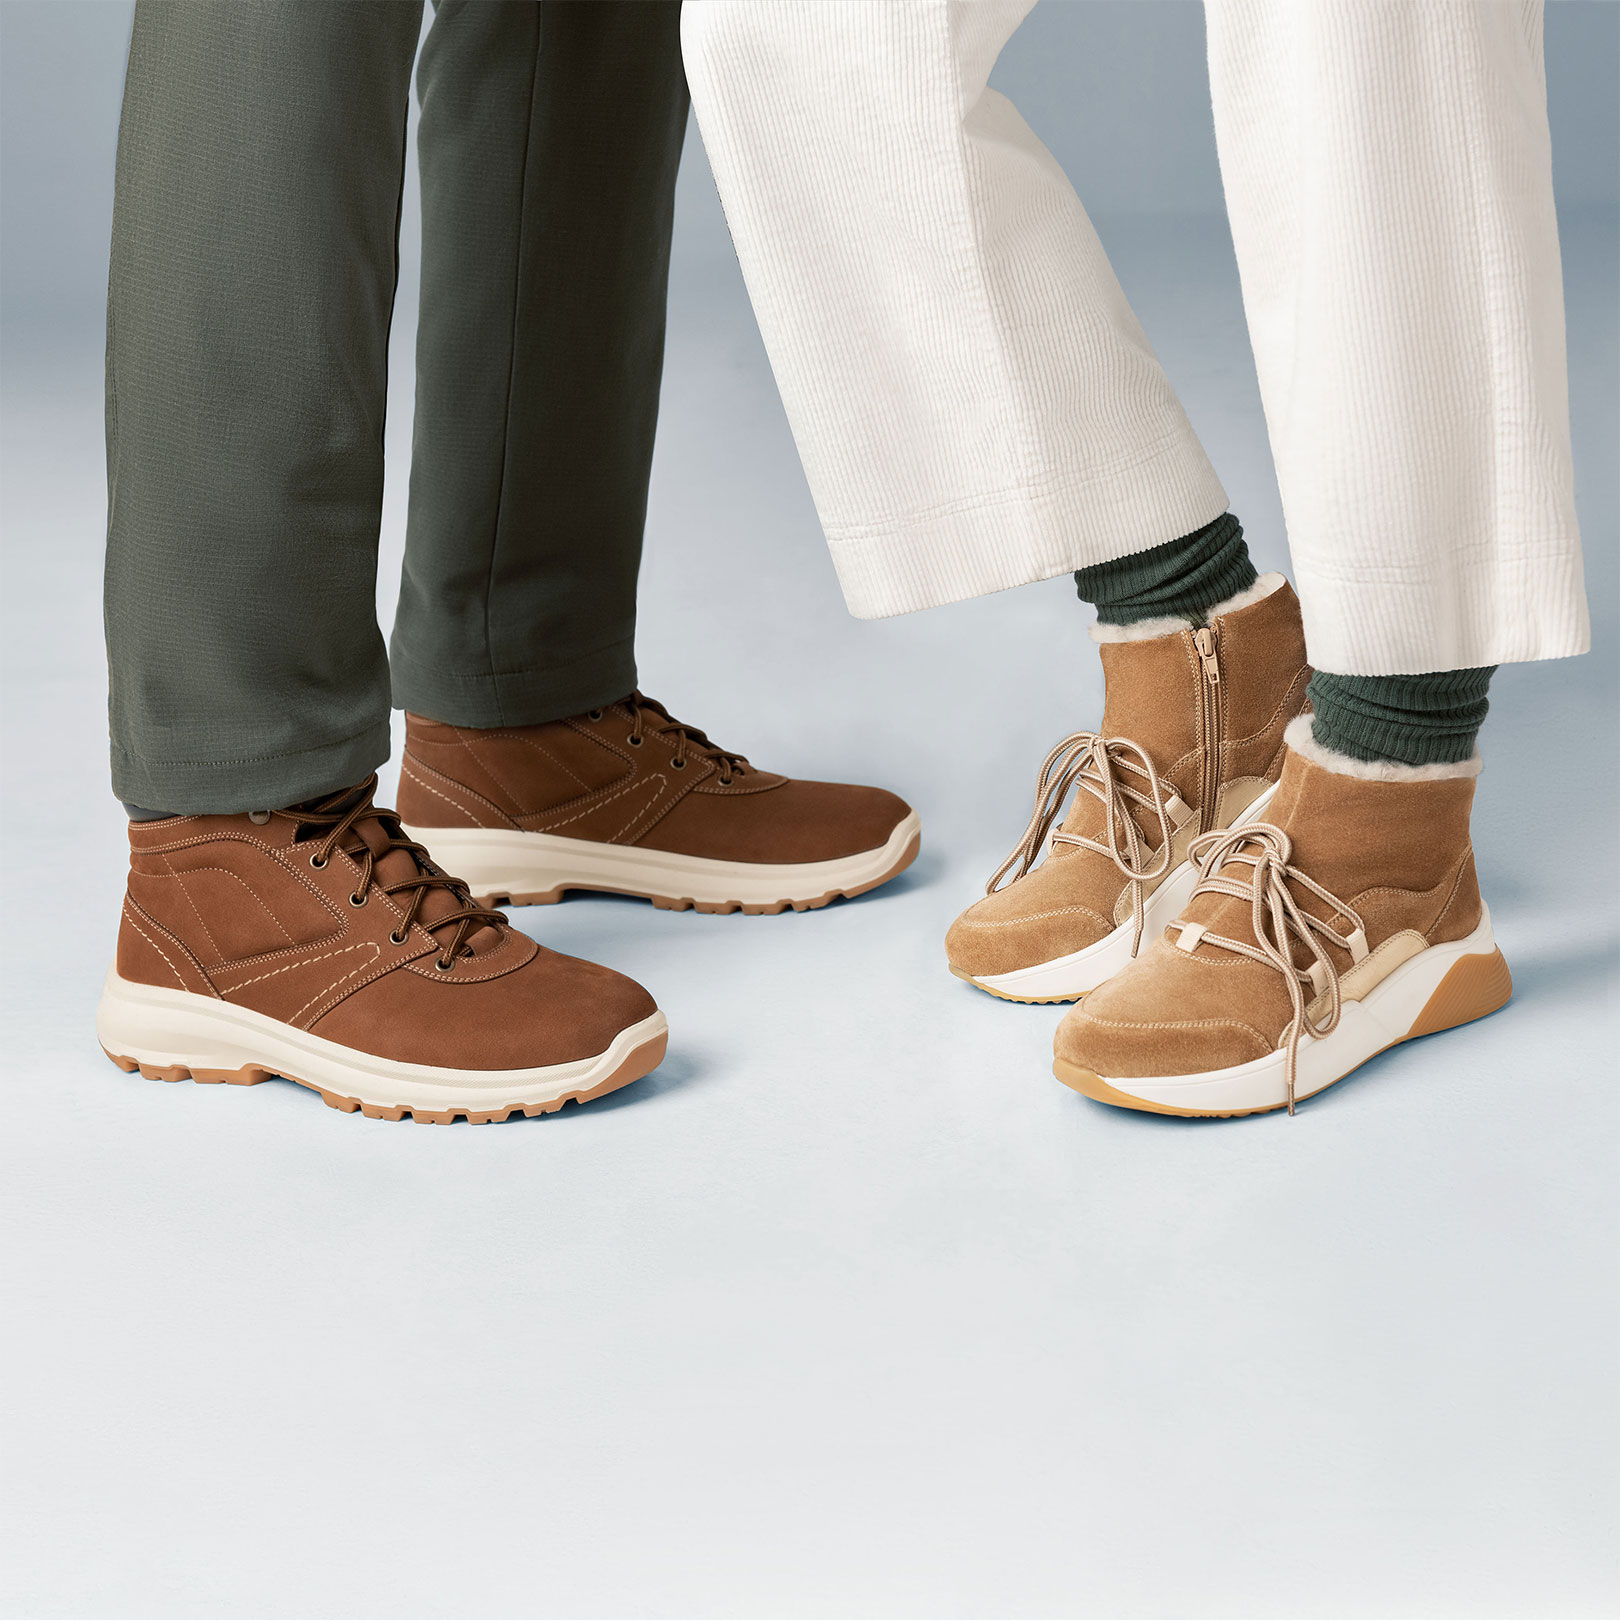 Ботинки мужские JEF (цвет коричневый, натуральная кожа,нубук) — купить по  цене 9450 р. в интернет-магазине RALF RINGER | Стильная мужская обувь в  Москве